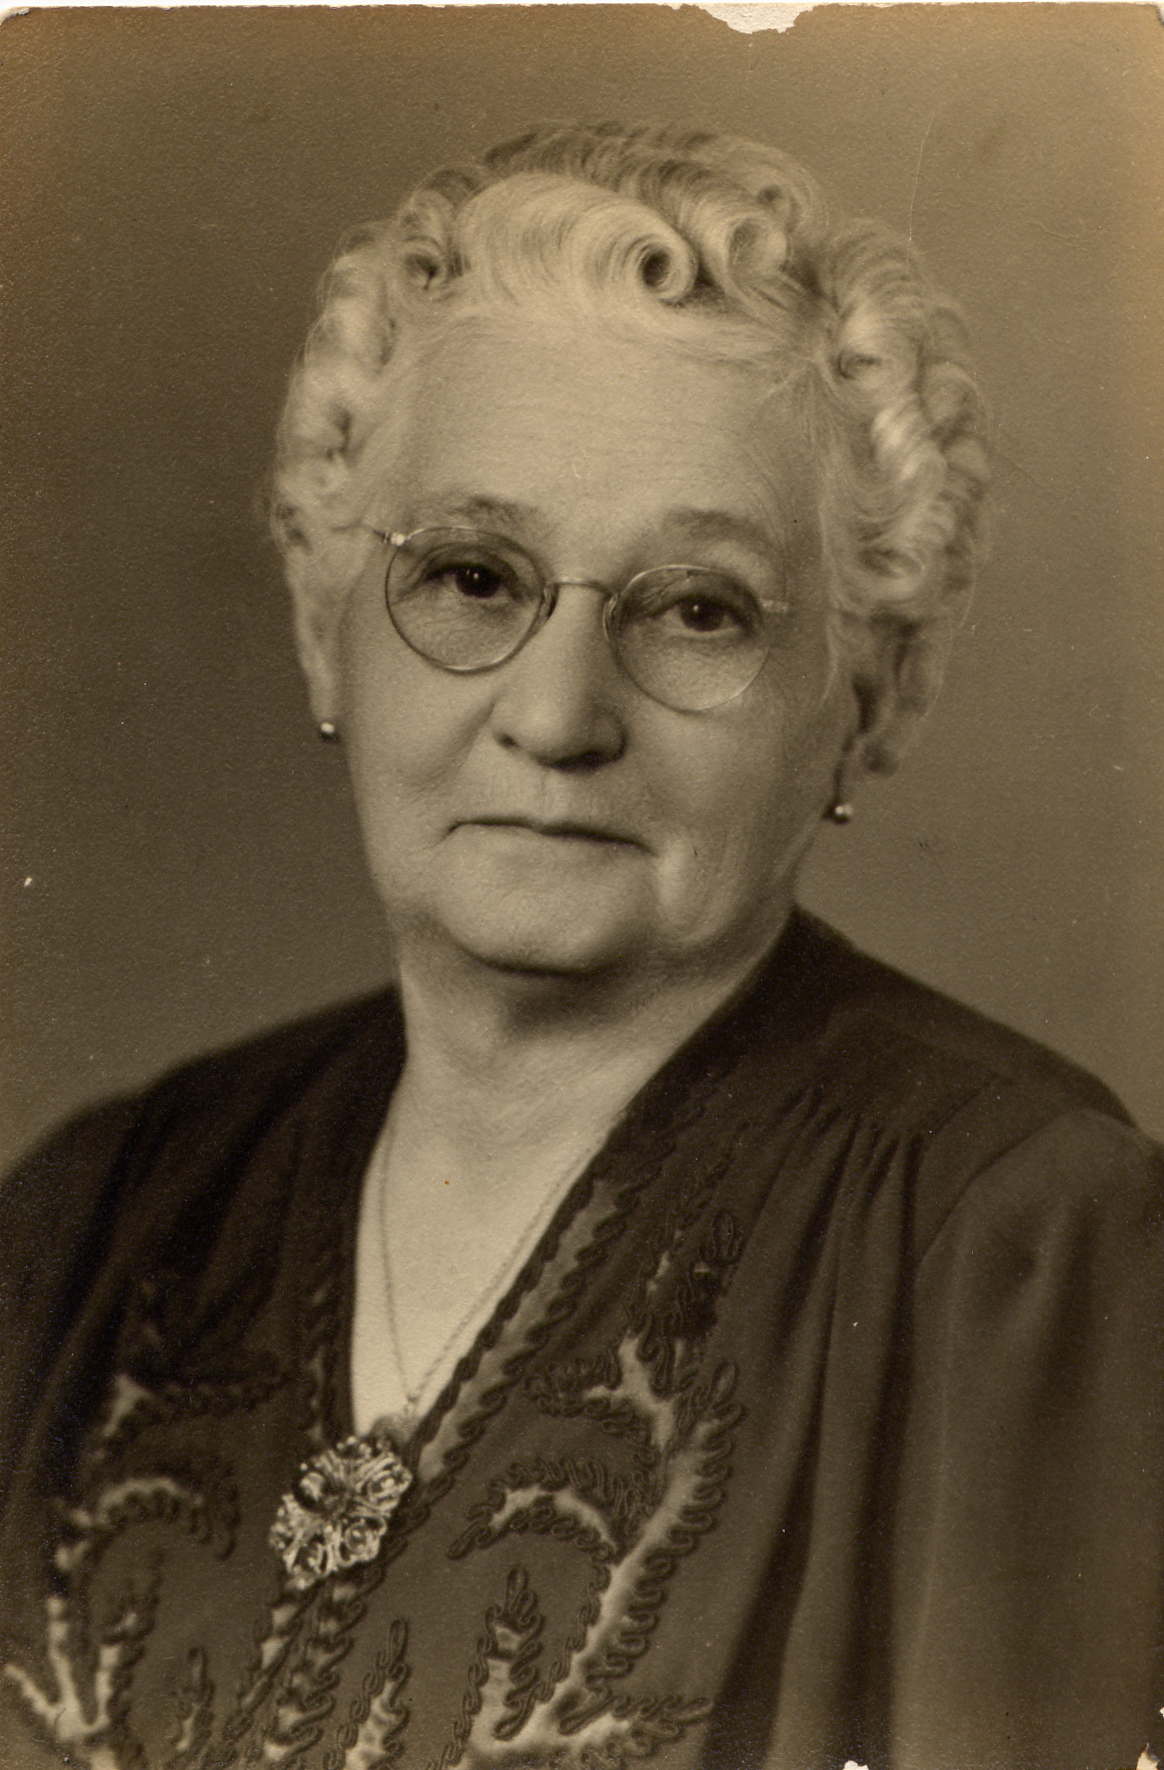 Sidney Helen Van Scoy